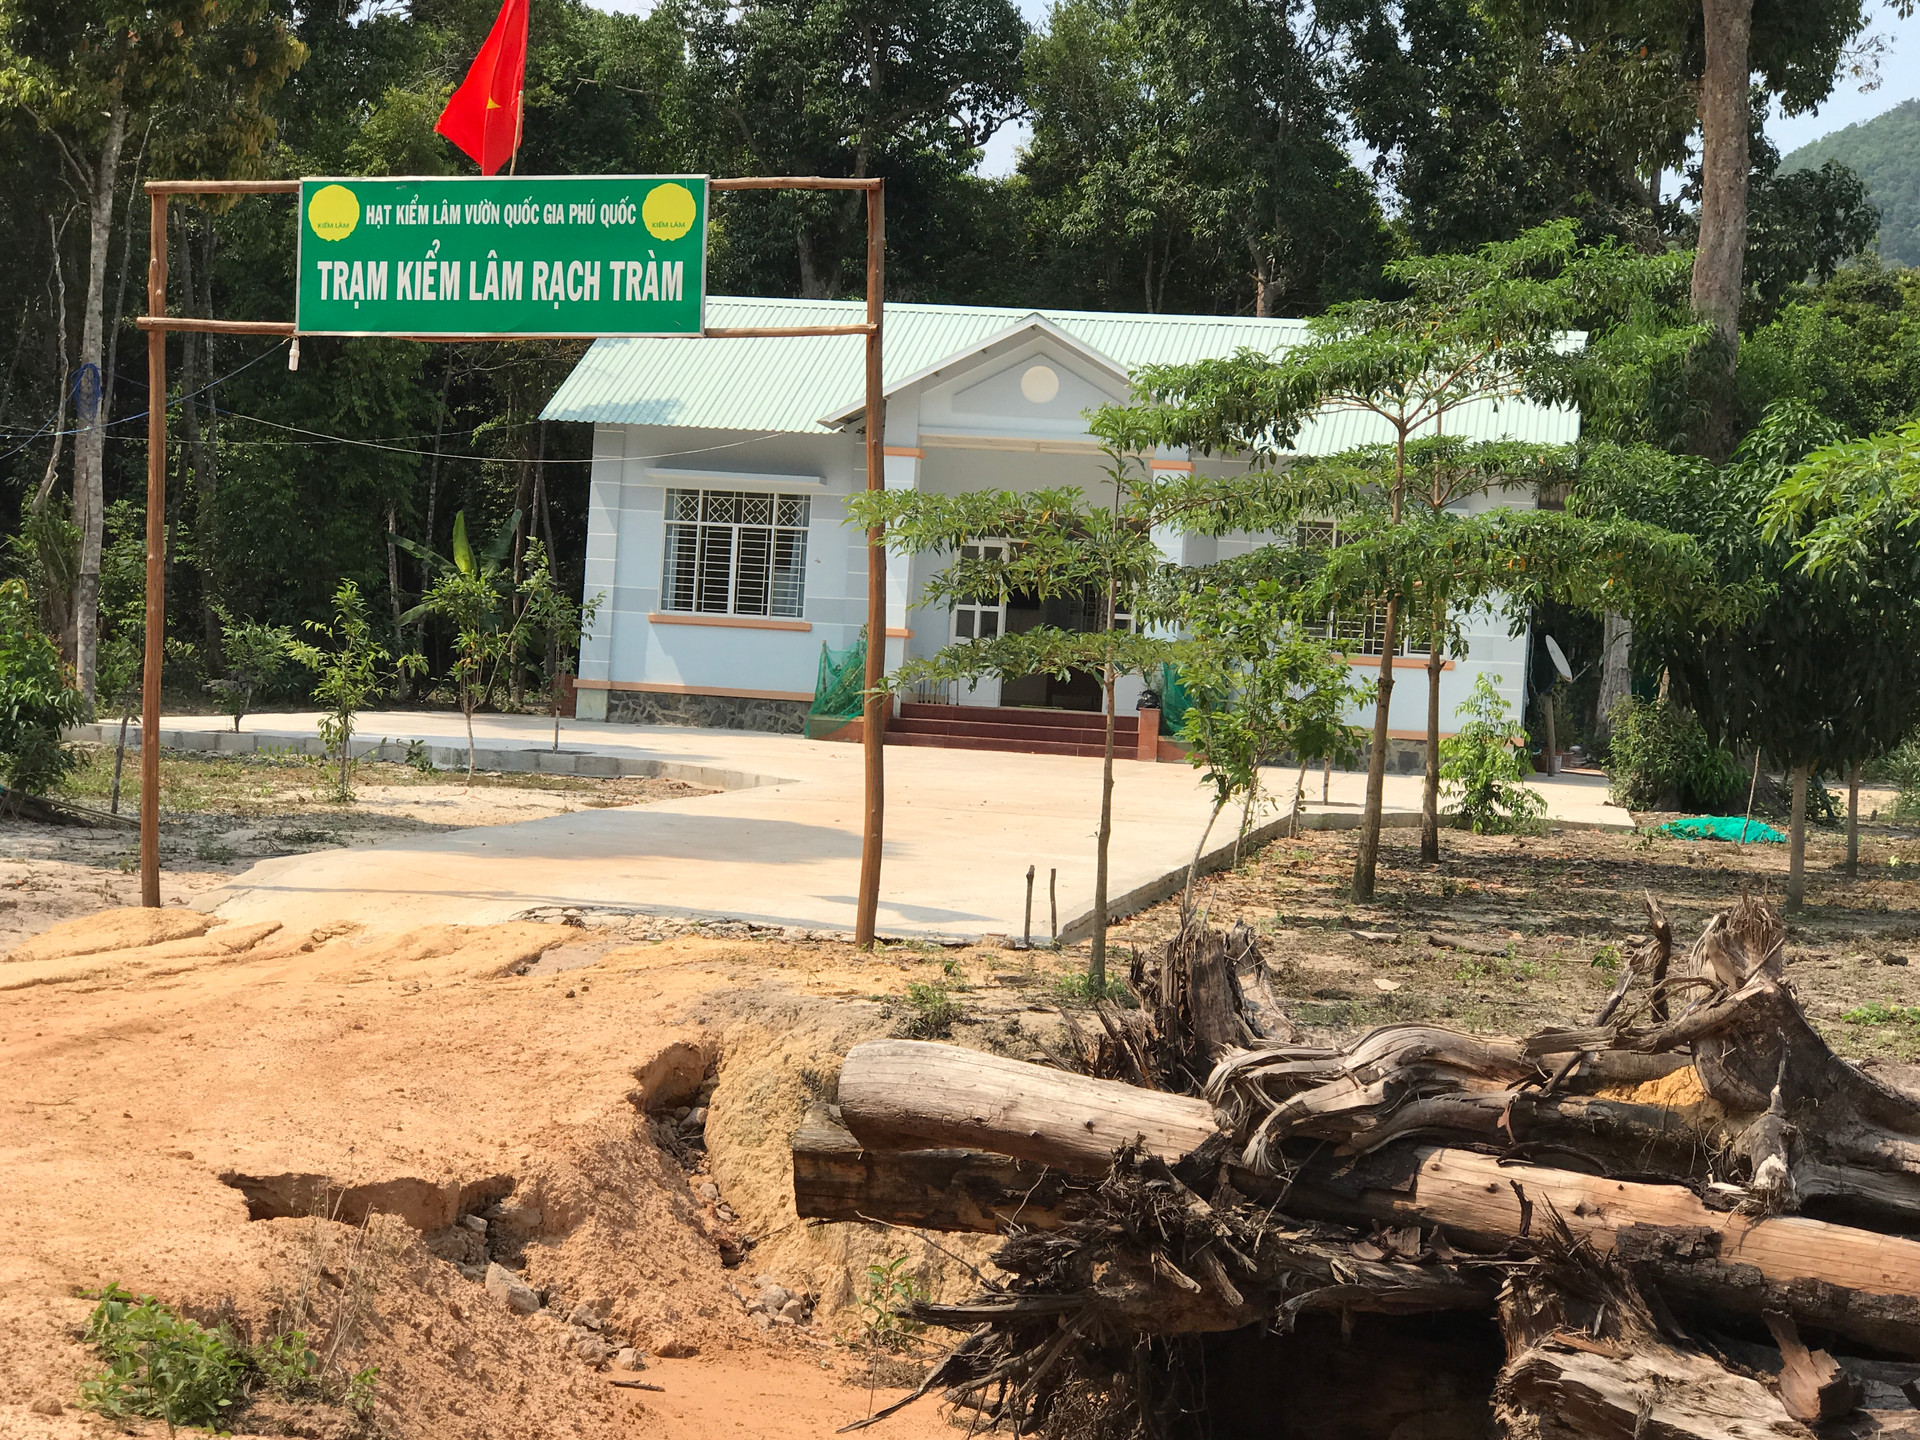 Phó Thủ tướng Chính phủ yêu cầu xử lý hình sự đối tượng phá rừng, lấn chiếm đất công